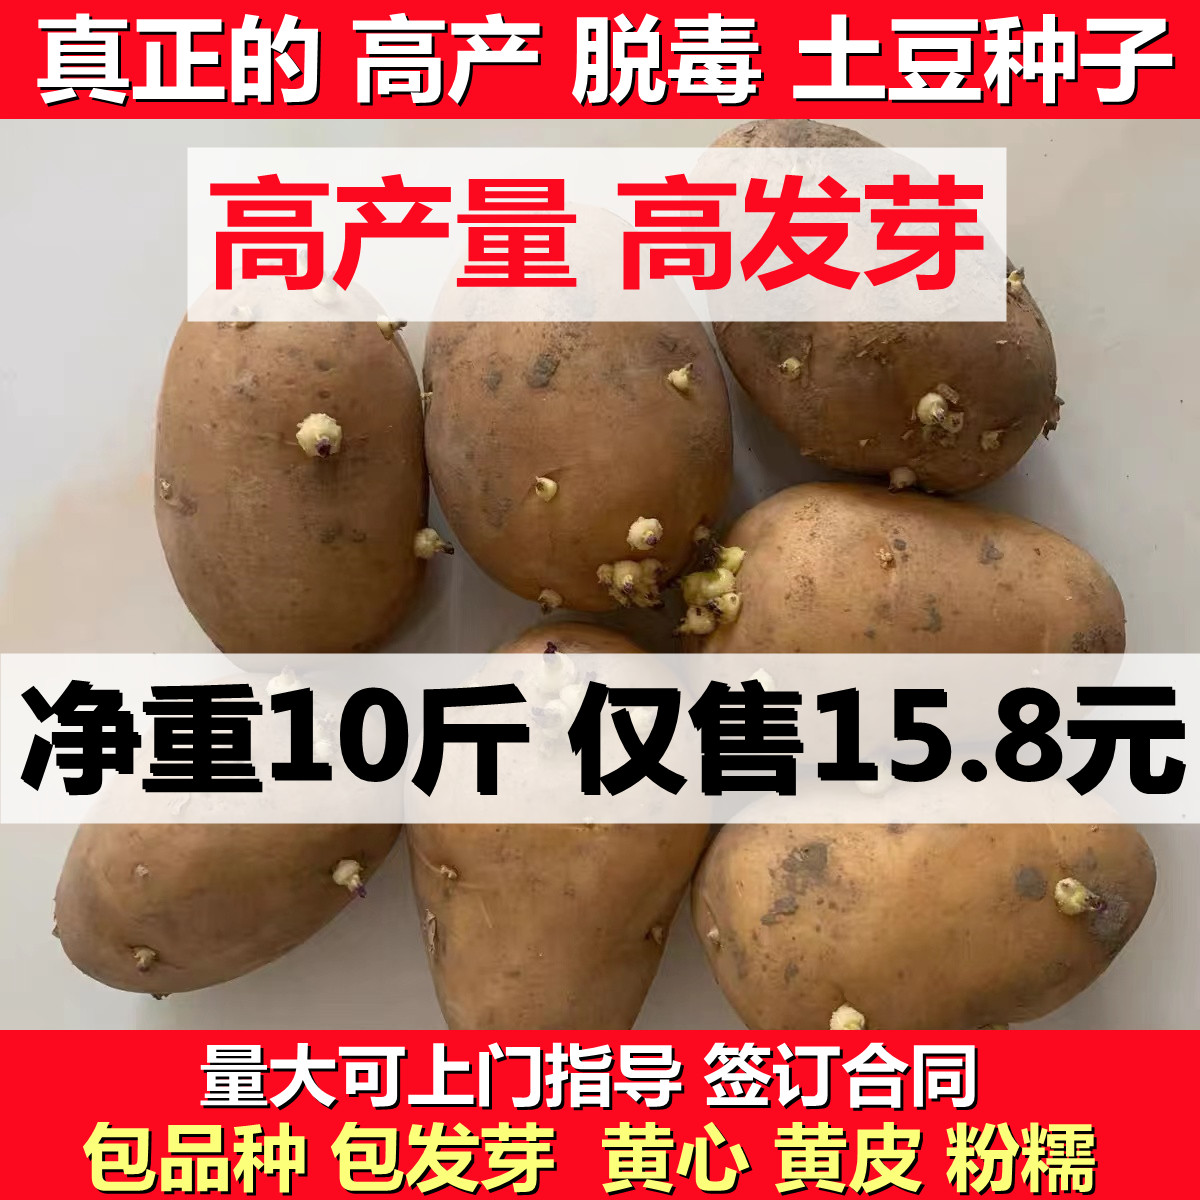 土豆种子黄皮黄心东北高产脱毒马铃薯原种苗洋芋种孑10斤种苗种薯